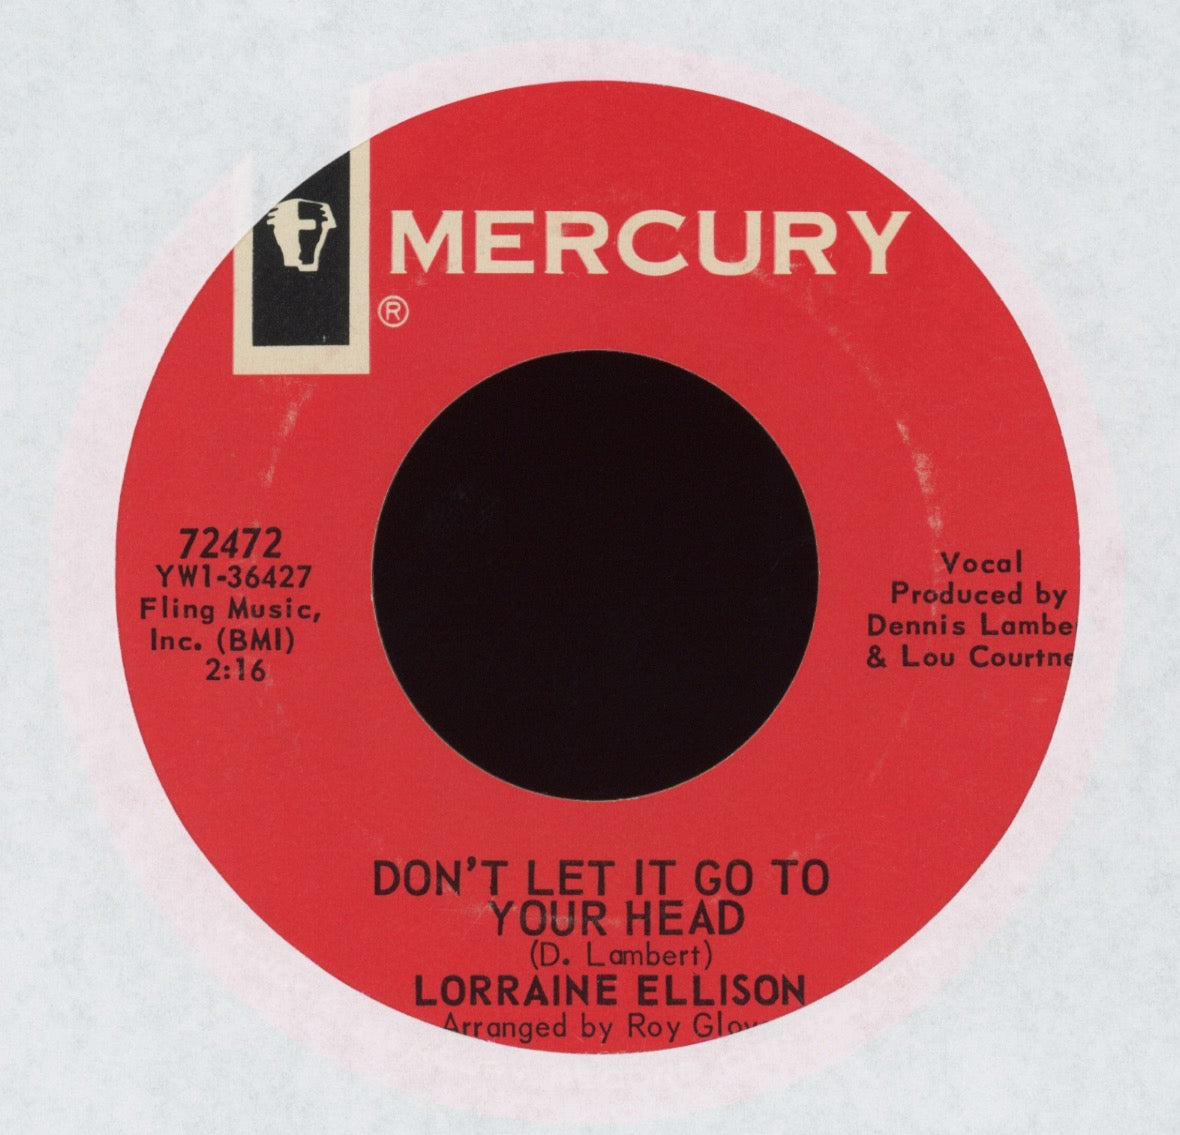 Lorraine Ellison - I Dig You Baby on Mercury